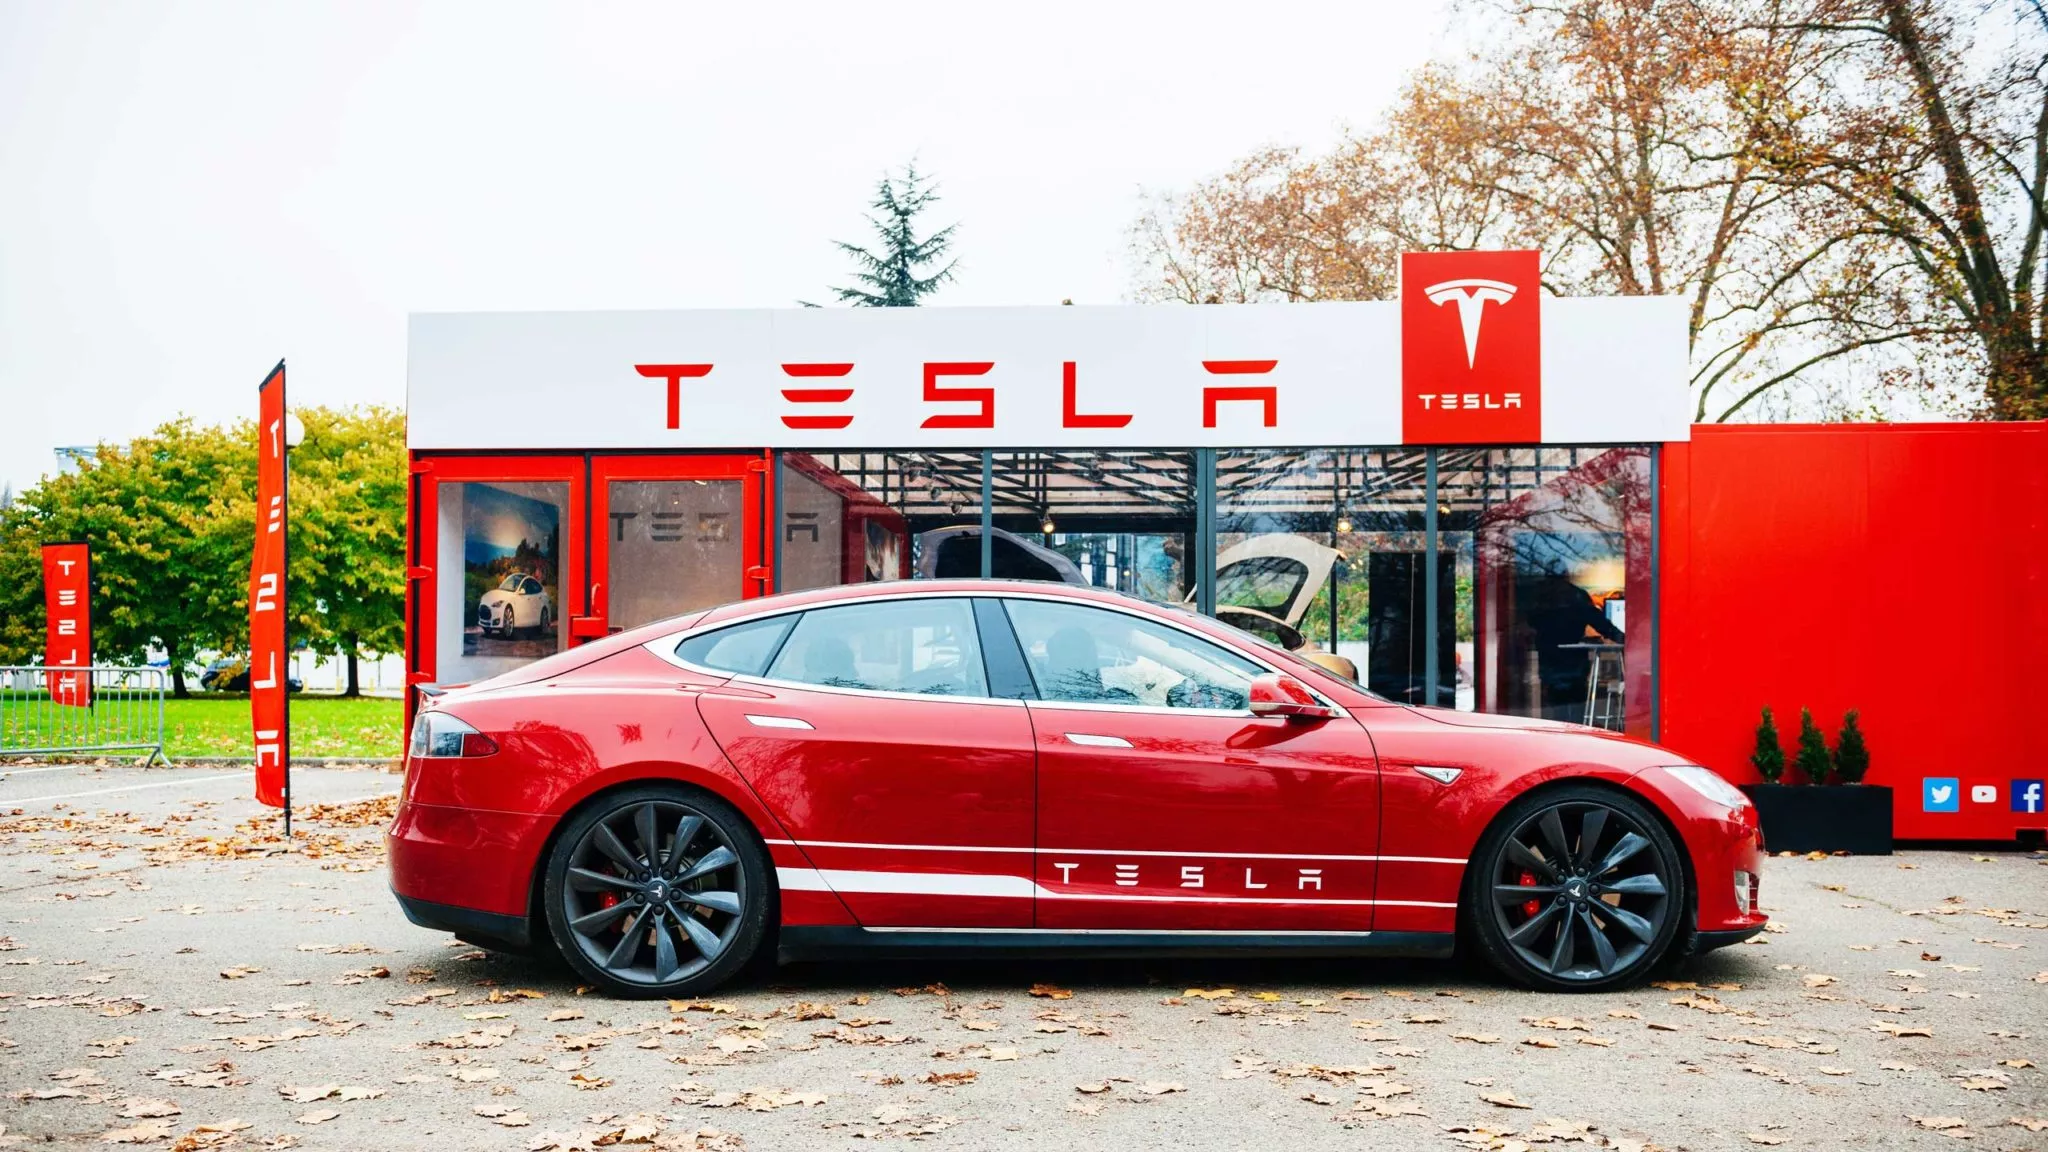 Red Tesla car outside Tesla shop